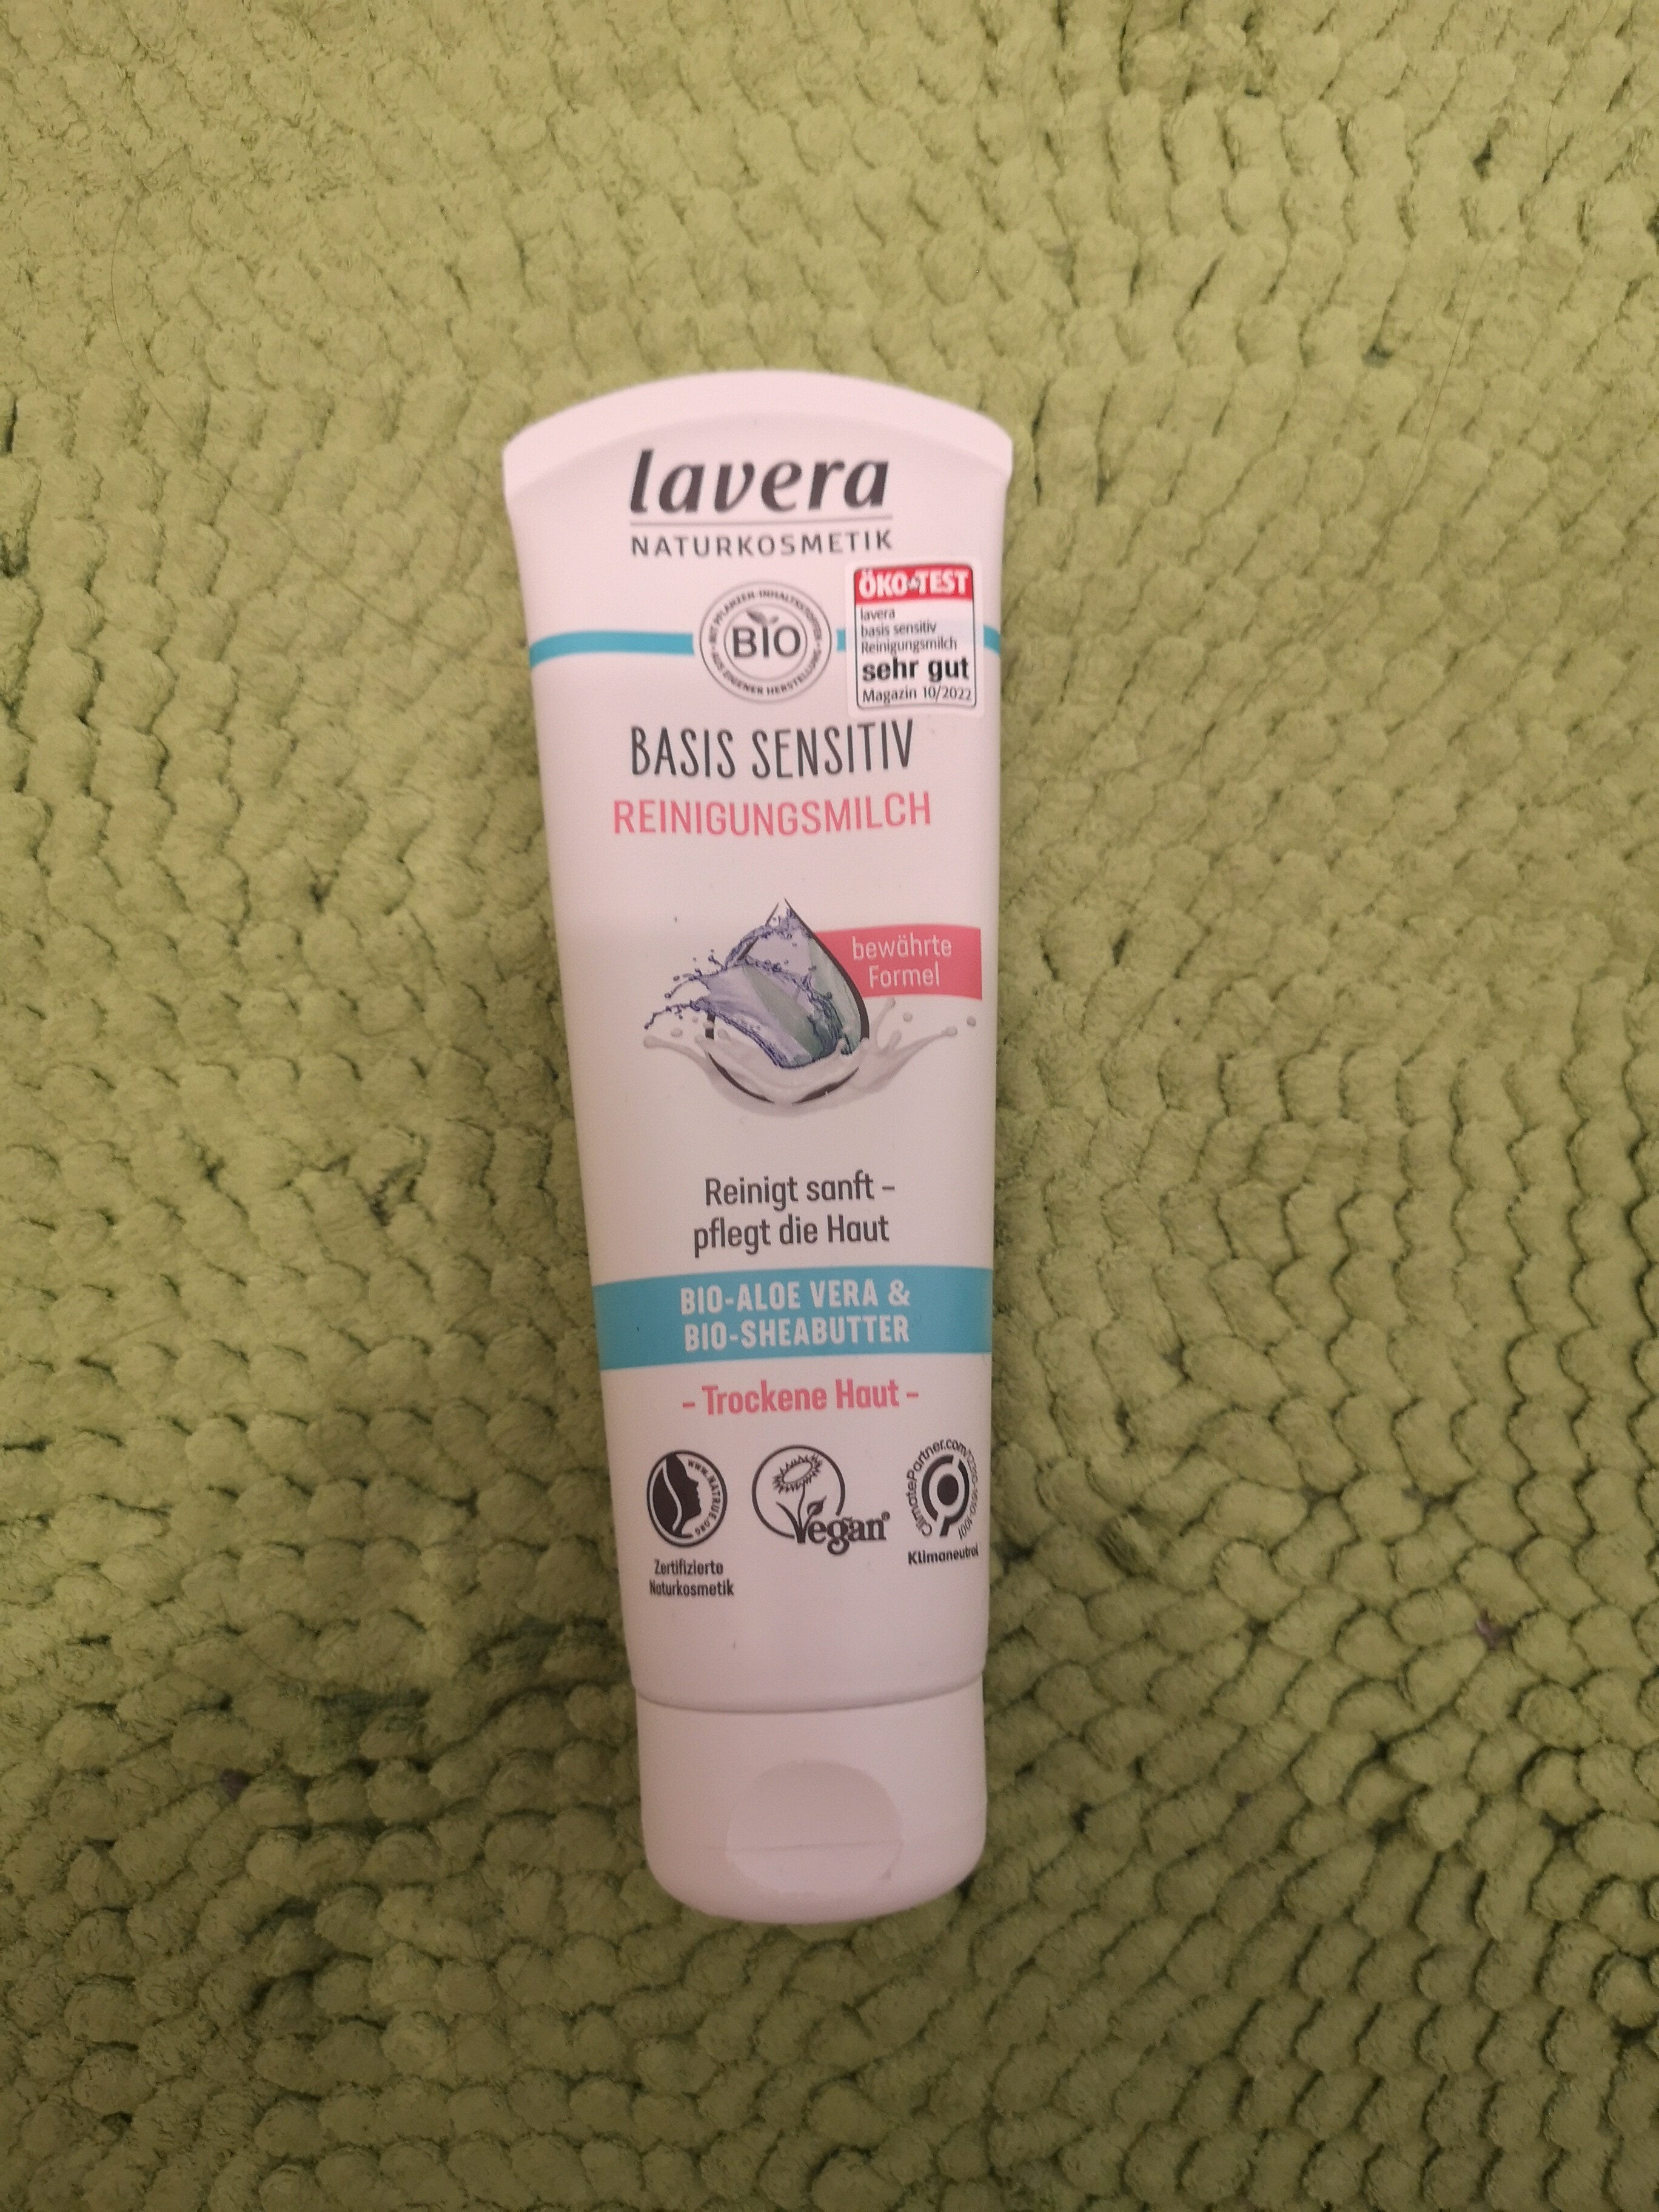 Lavera Basis Sensitive Reinigungsmilch - Product - de